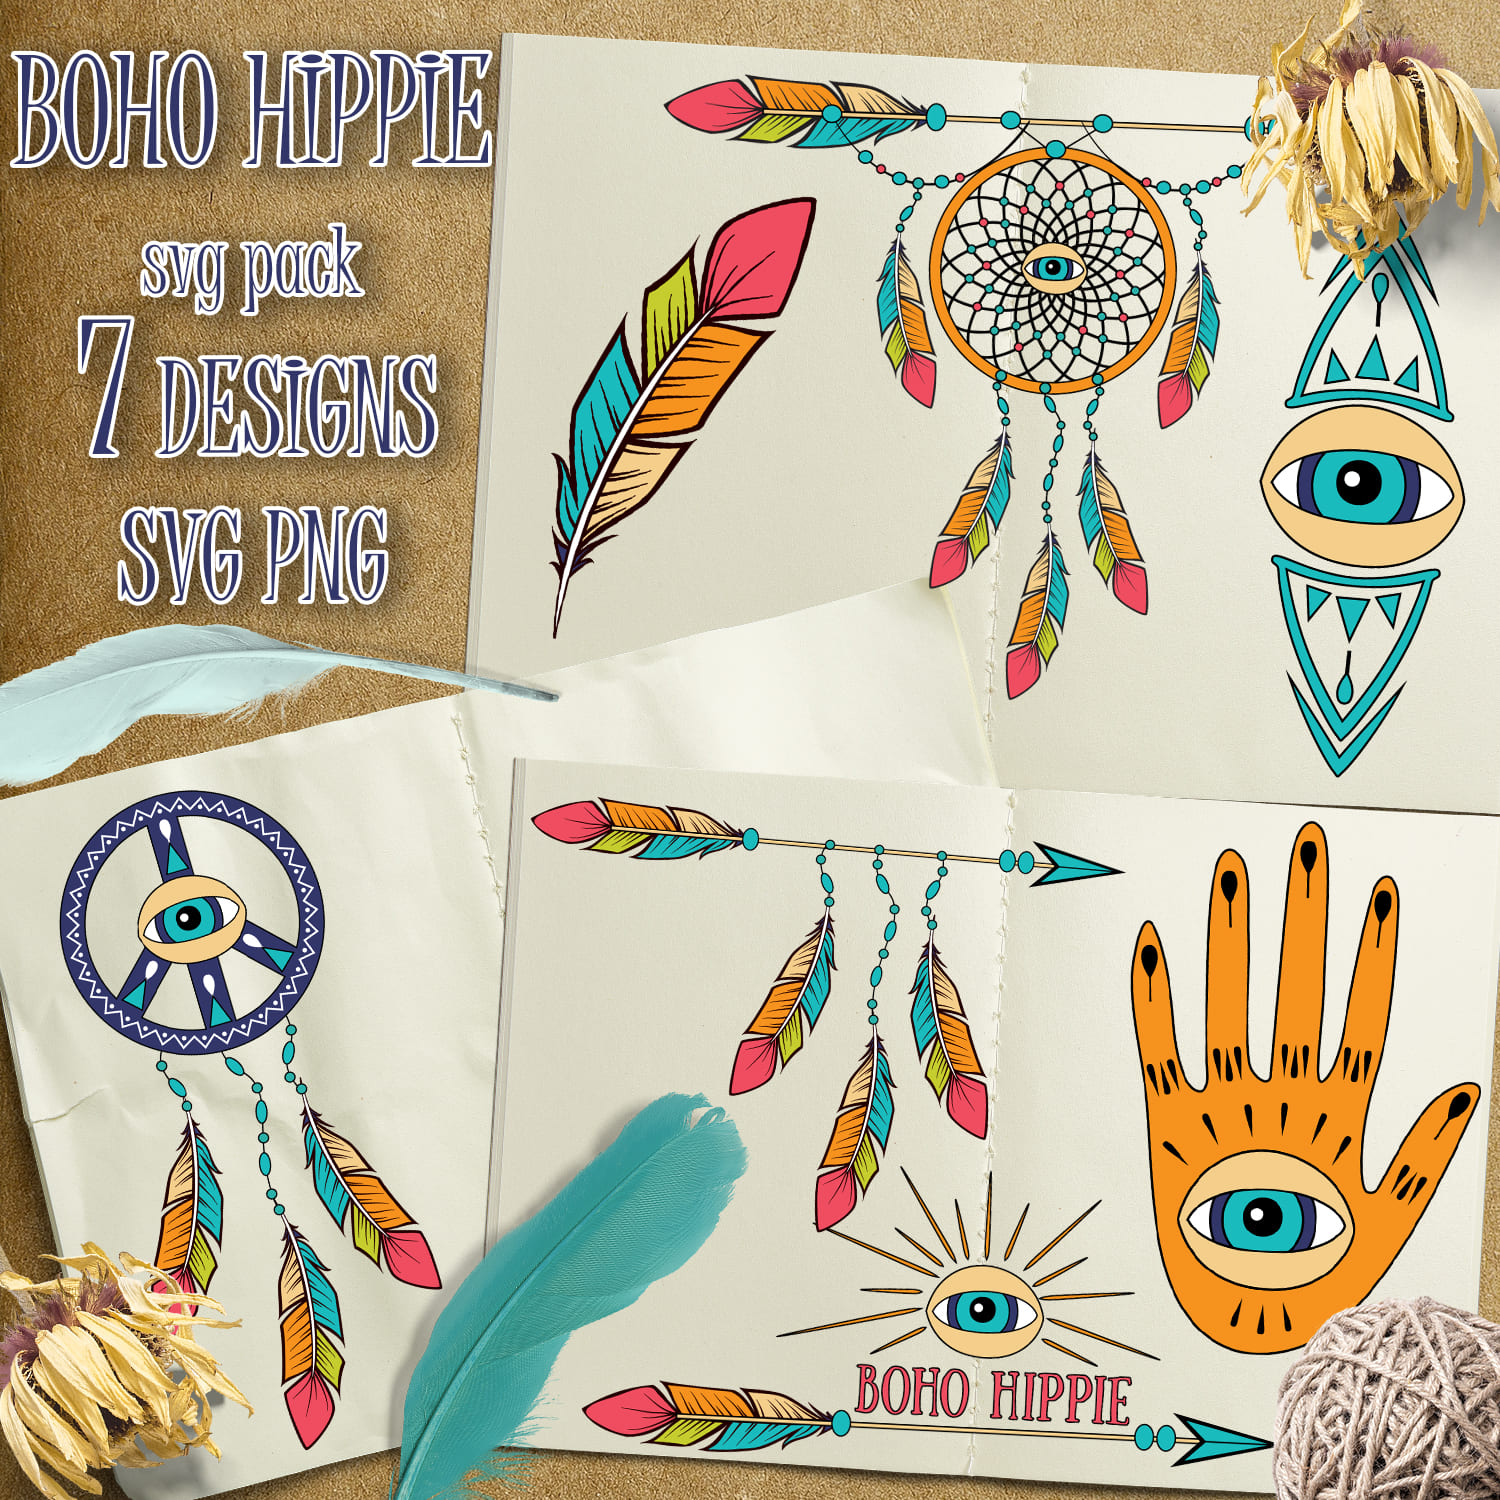 Boho Hippie SVG T-shirt Designs Bundle - main image preview.